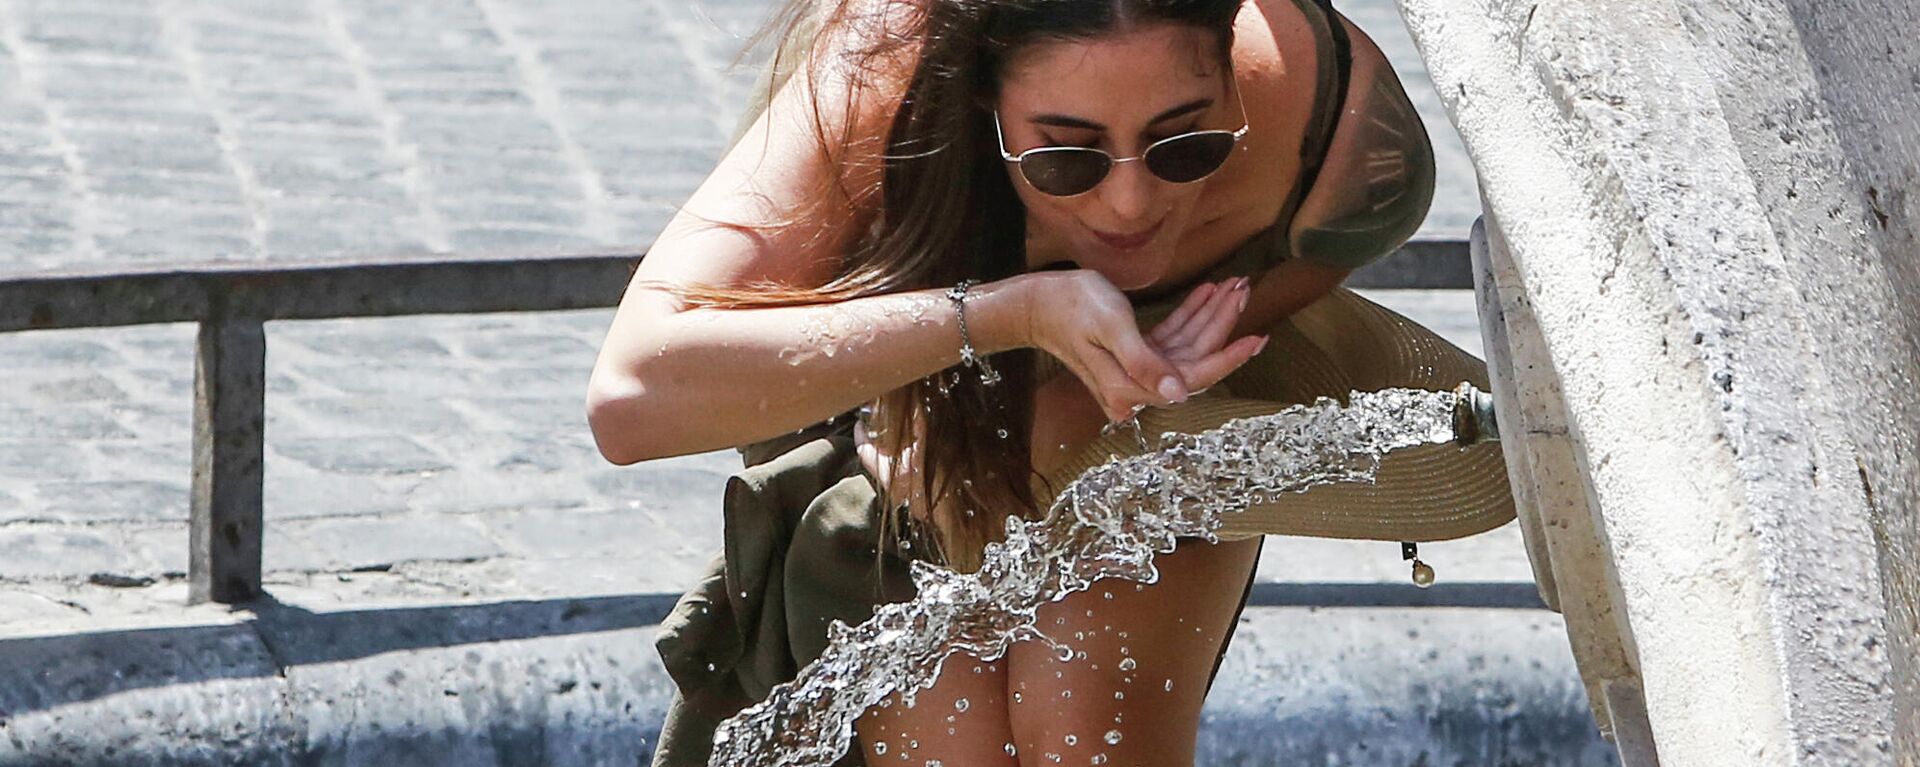 Un mujer bebe agua durante la ola de calor en Roma (Italia), el 31 de julio del 2022 - Sputnik Mundo, 1920, 14.05.2021